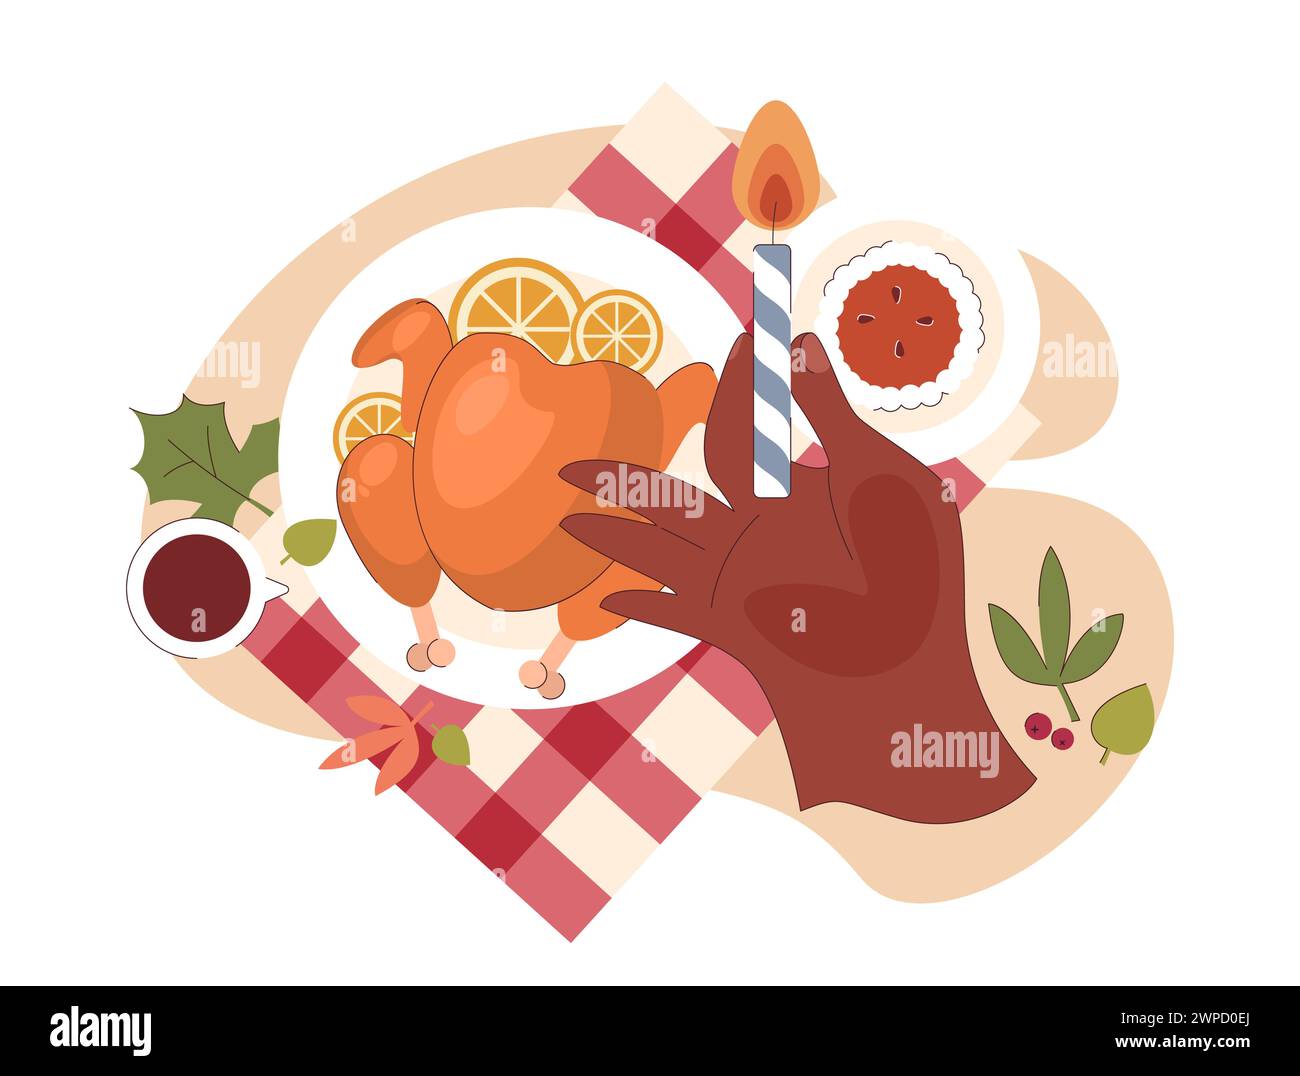 Fröhliche Familie feiert Thanksgiving. Amerikanische Feiertagsessen und -Treffen. Glückliche Kinder, Eltern und Großeltern, die Zeit miteinander verbringen. Illustration des flachen Vektors Stock Vektor